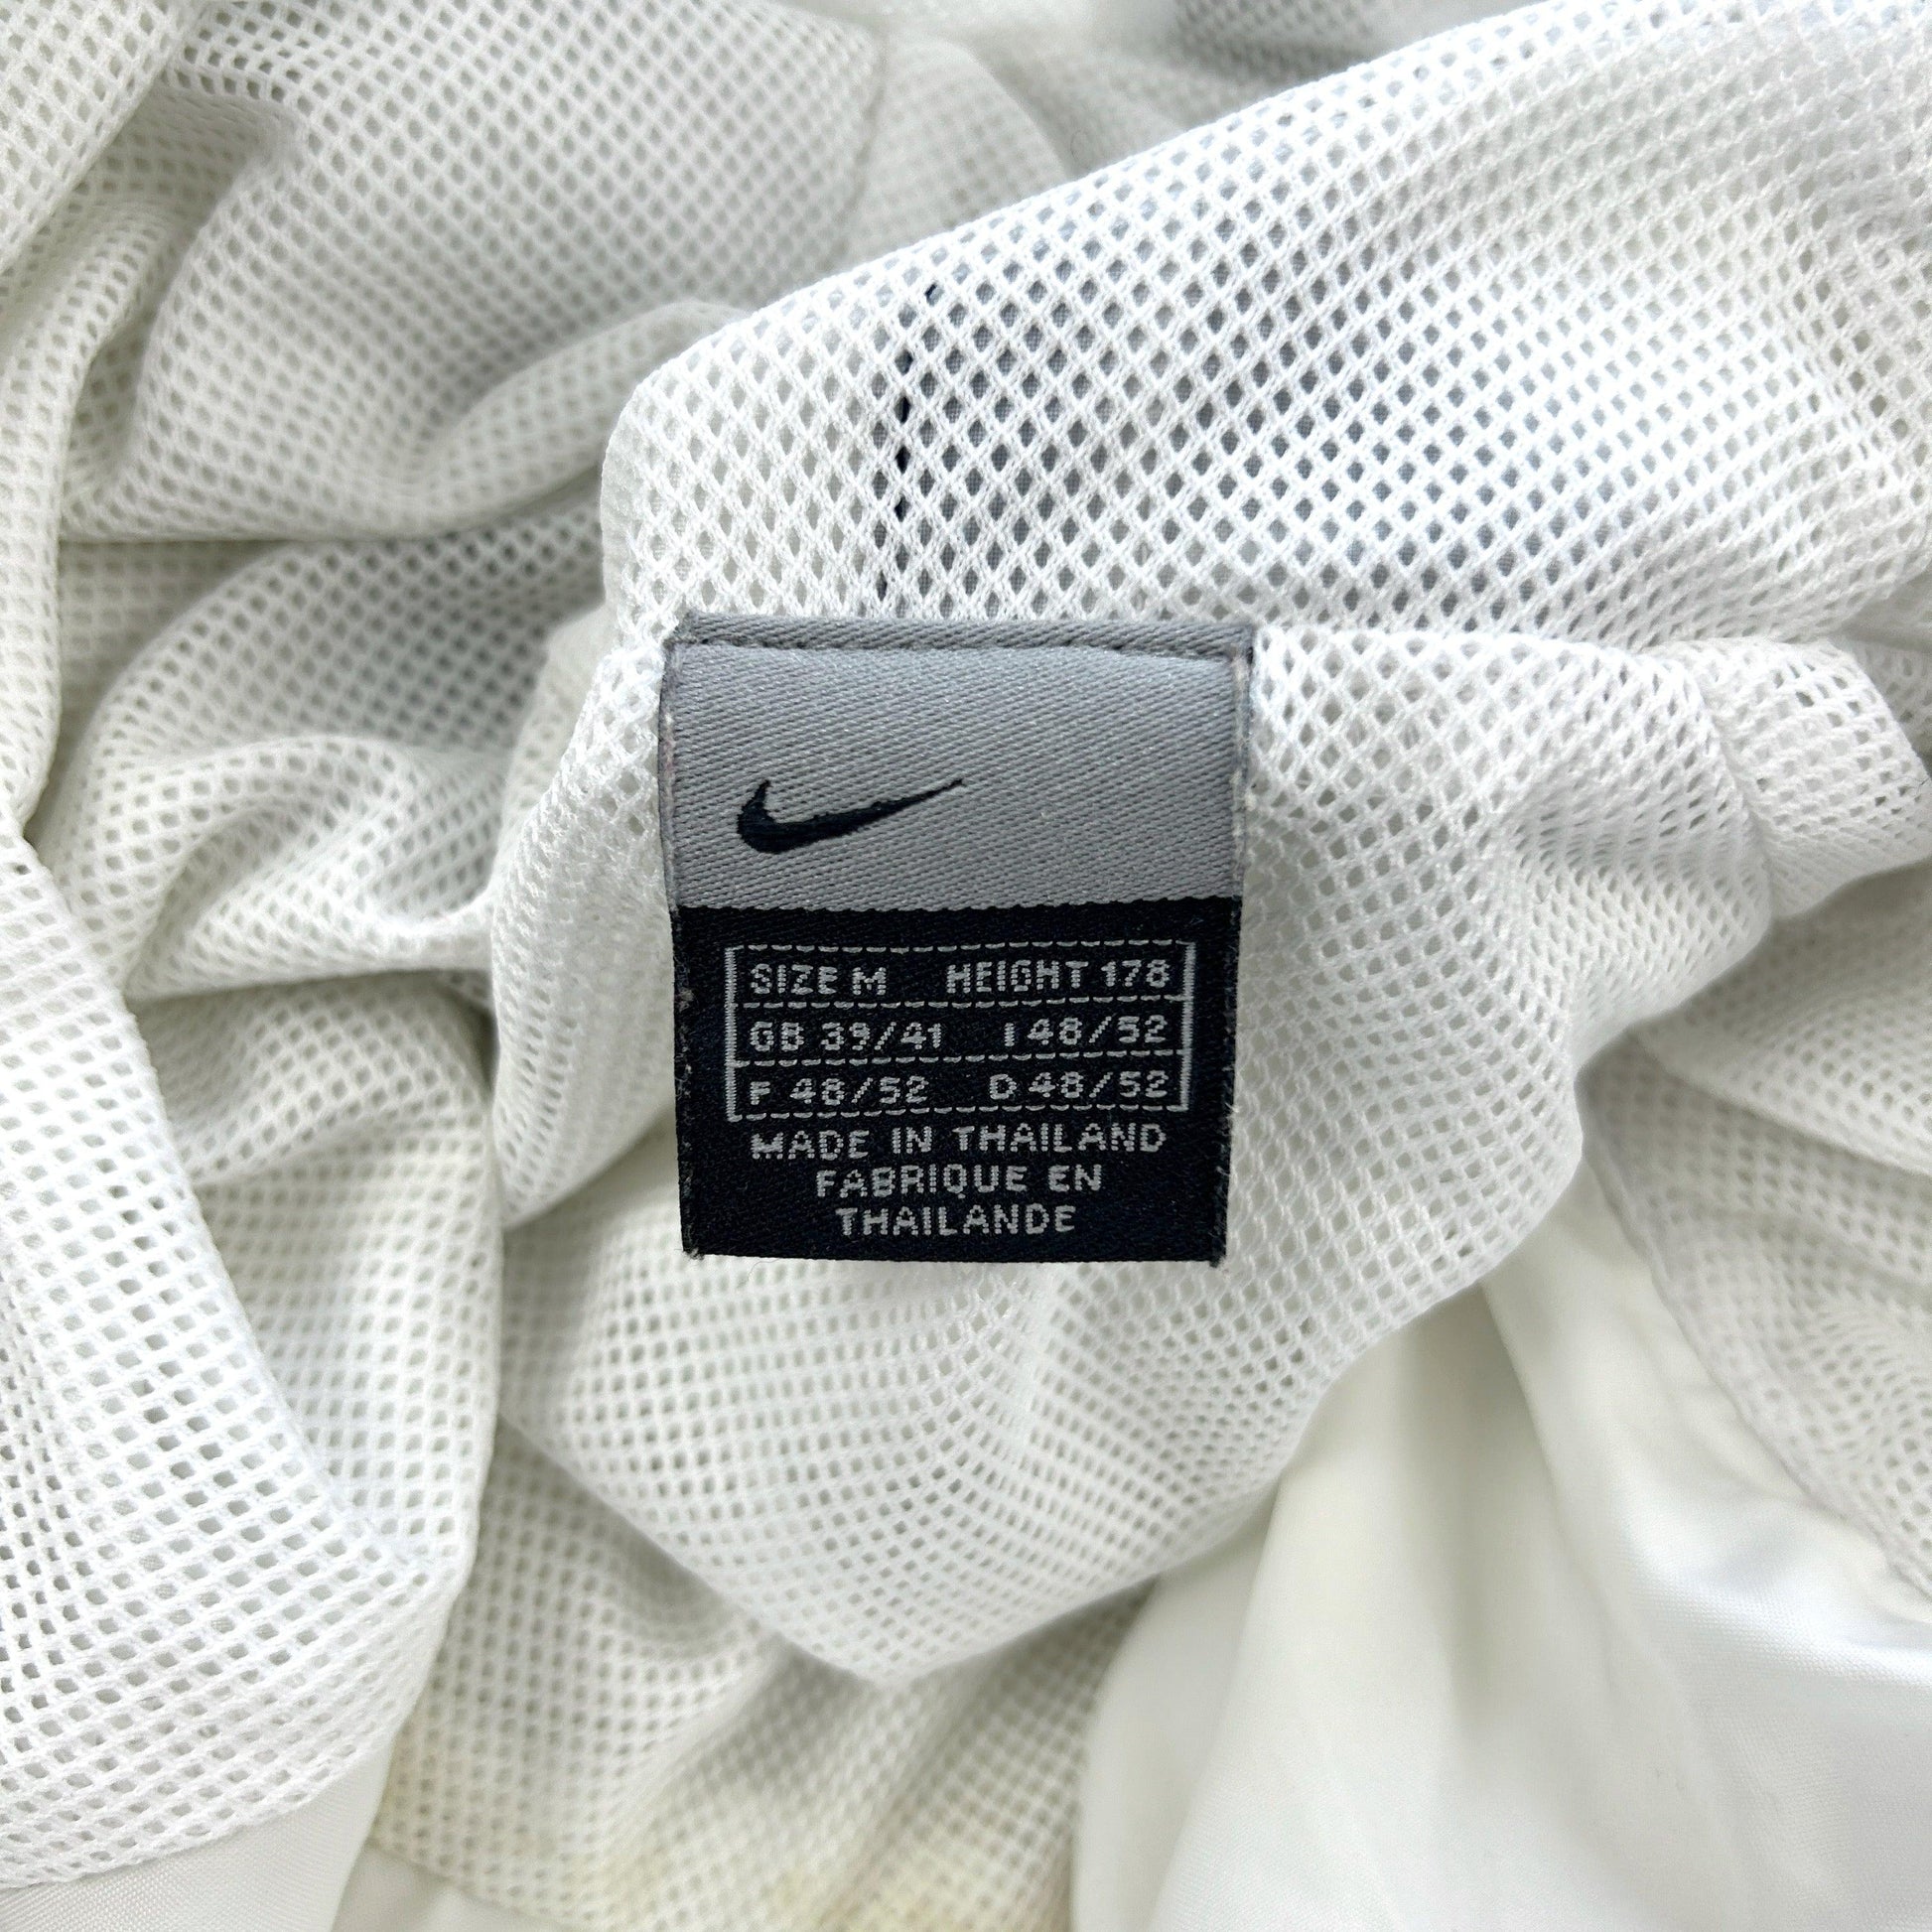 Vintage Nike Hex Asymmetric Jacket Size L - Known Source